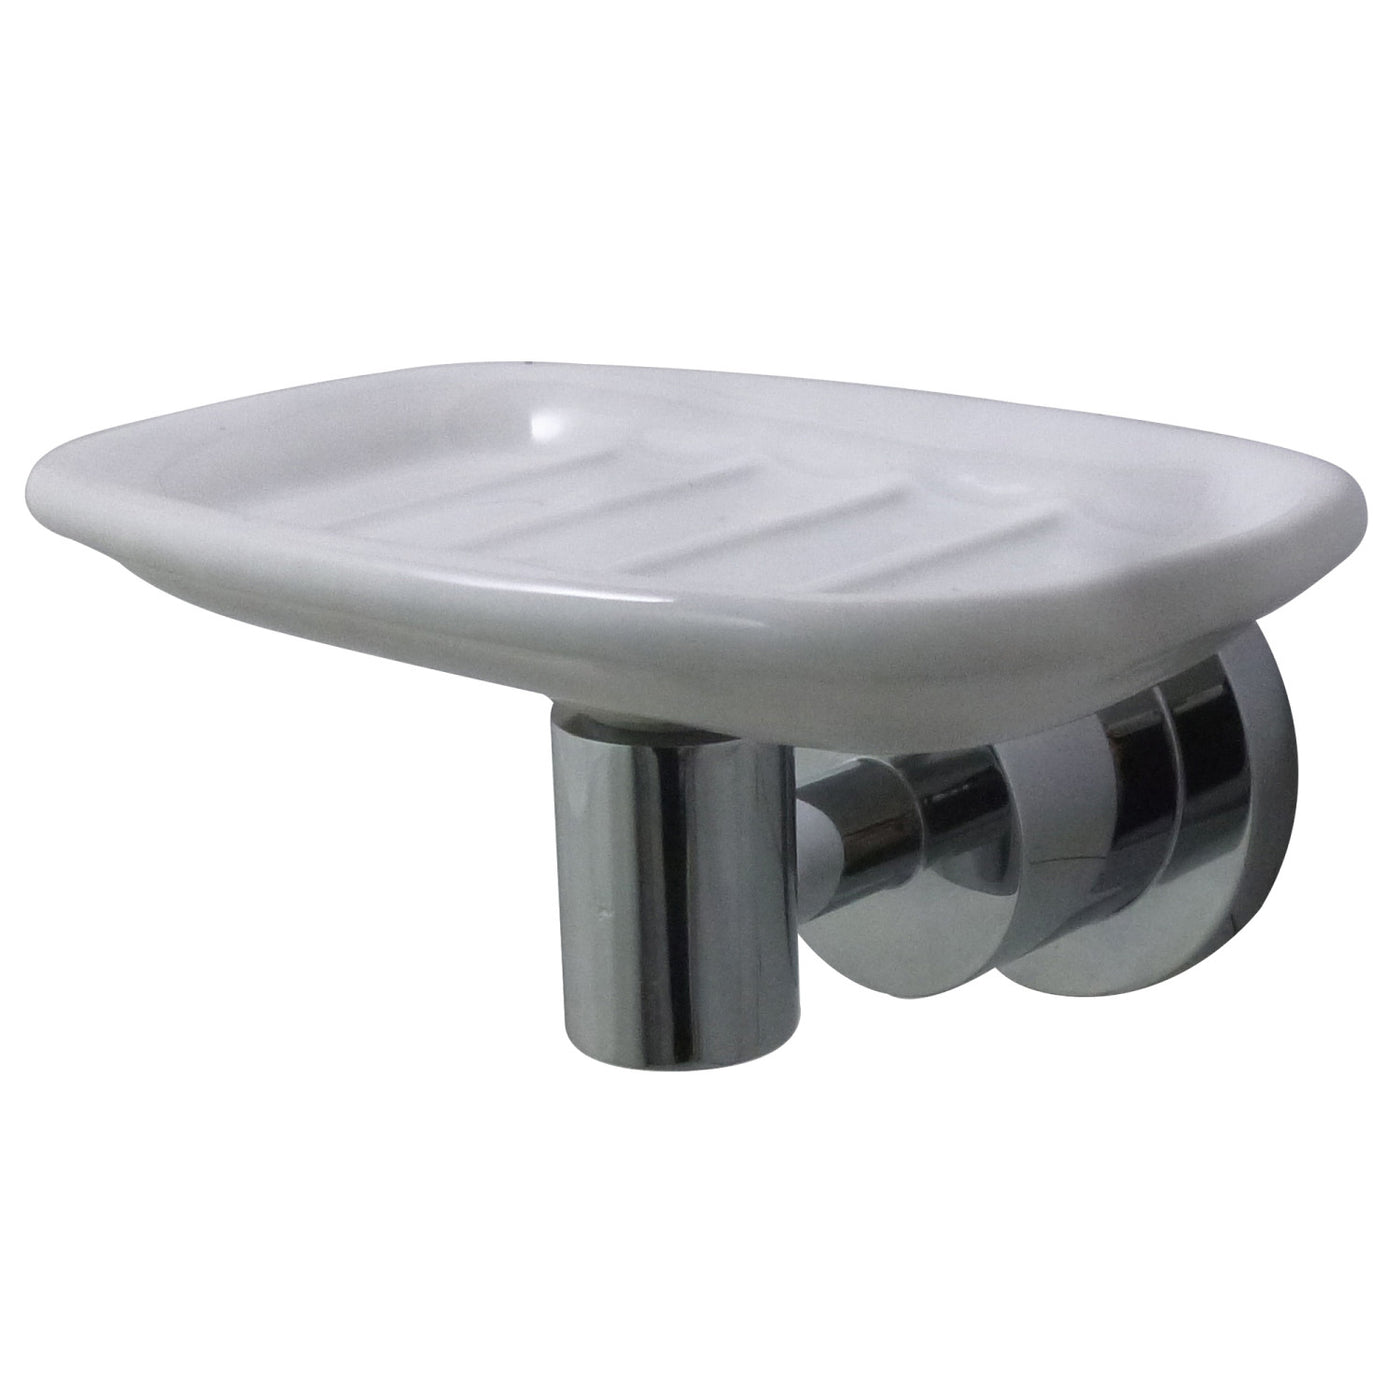 Elements of Design EBA8215C Wall-Mount Soap Dish Holder, Polished Chrome